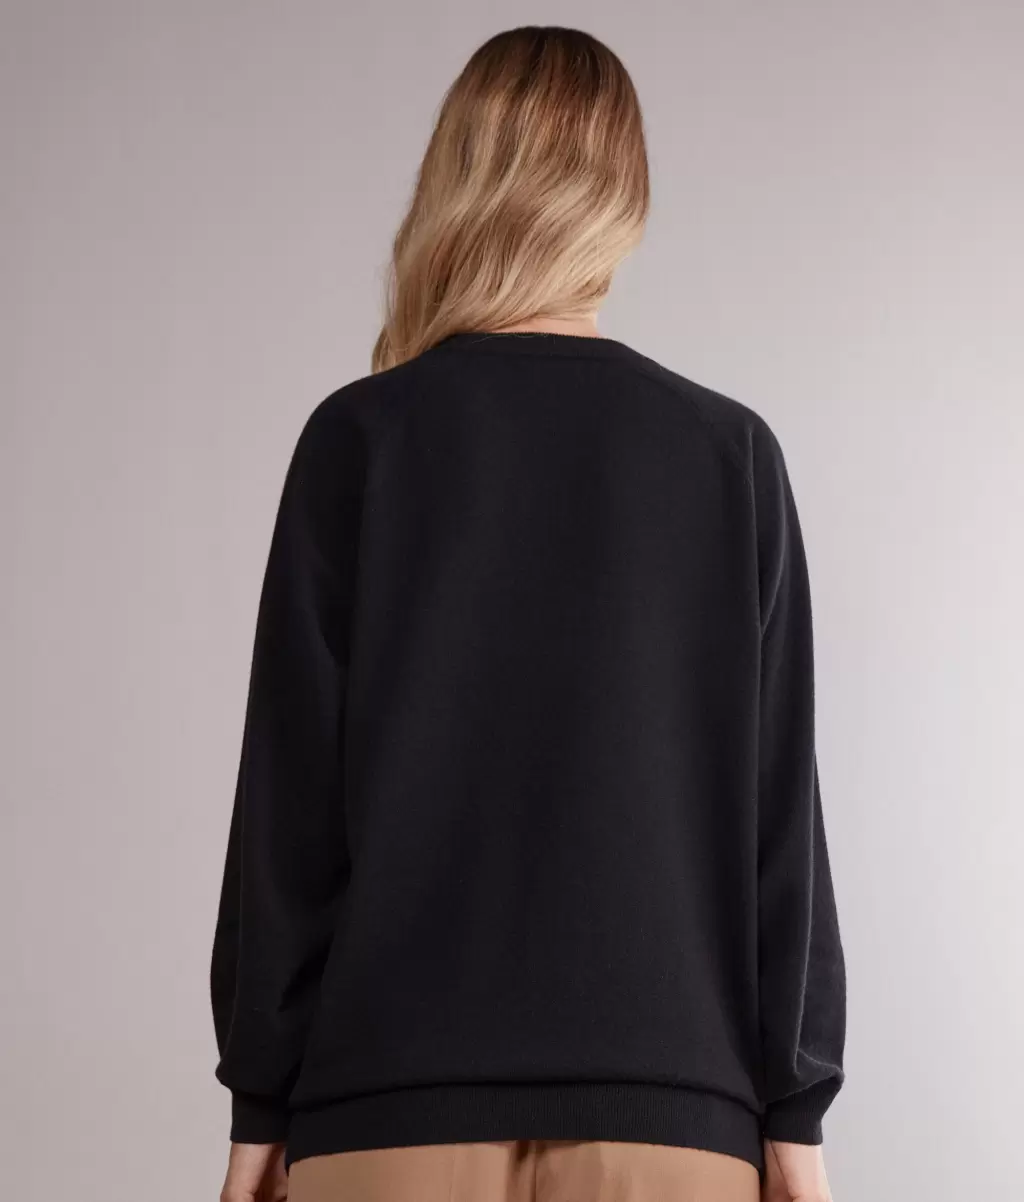 Black Falconeri Bluzka Maxi Z Okągłym Dekoltem Z Kaszmiru Ultrasoft Swetry Z Okrągłym Dekoltem Kobieta - 2